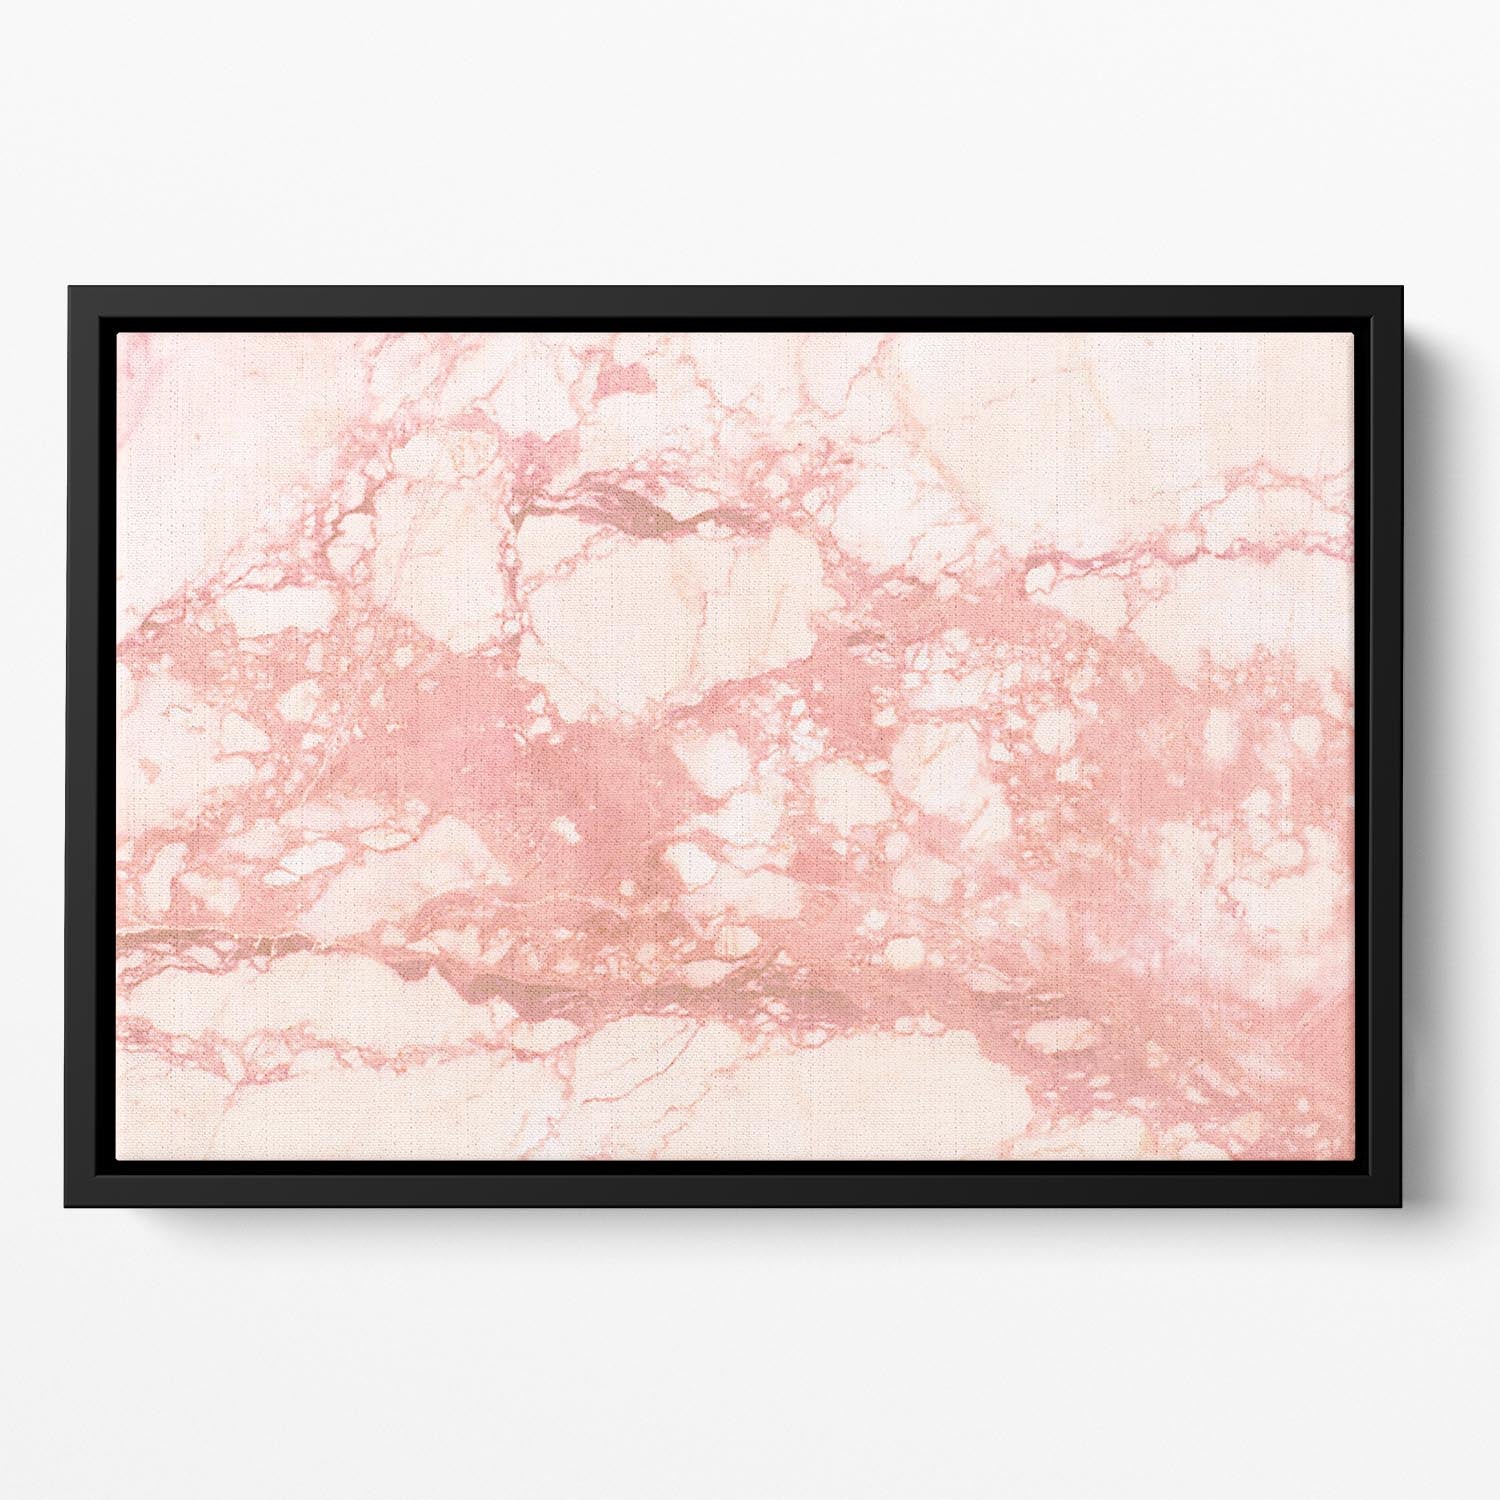 Rose Gold Marble Floating Framed Canvas - Canvas Art Rocks - 2